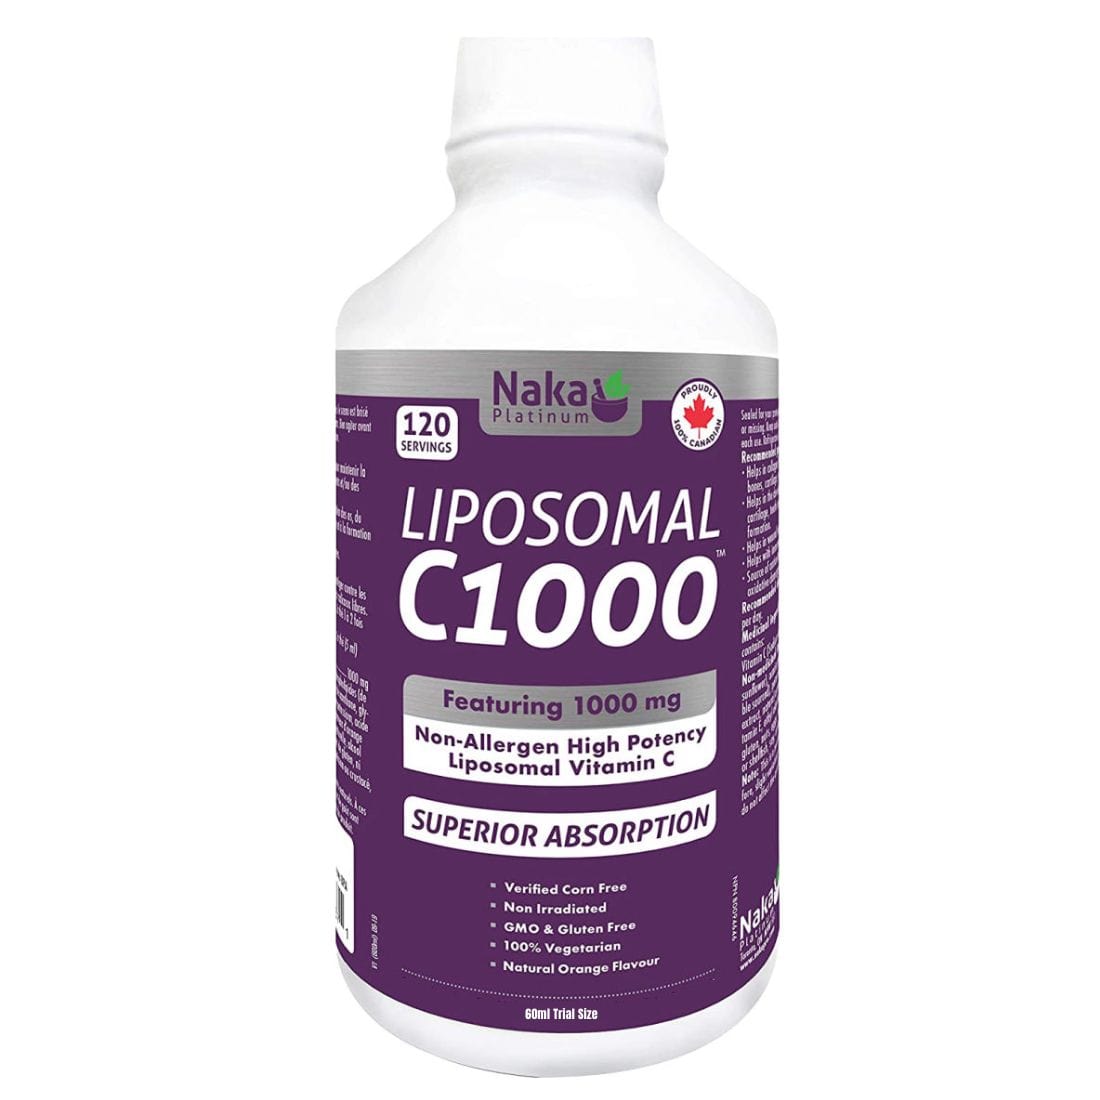 Naka Platinum Liposomal Vitamin C 1000mg C1000 Liquid Vitamin C